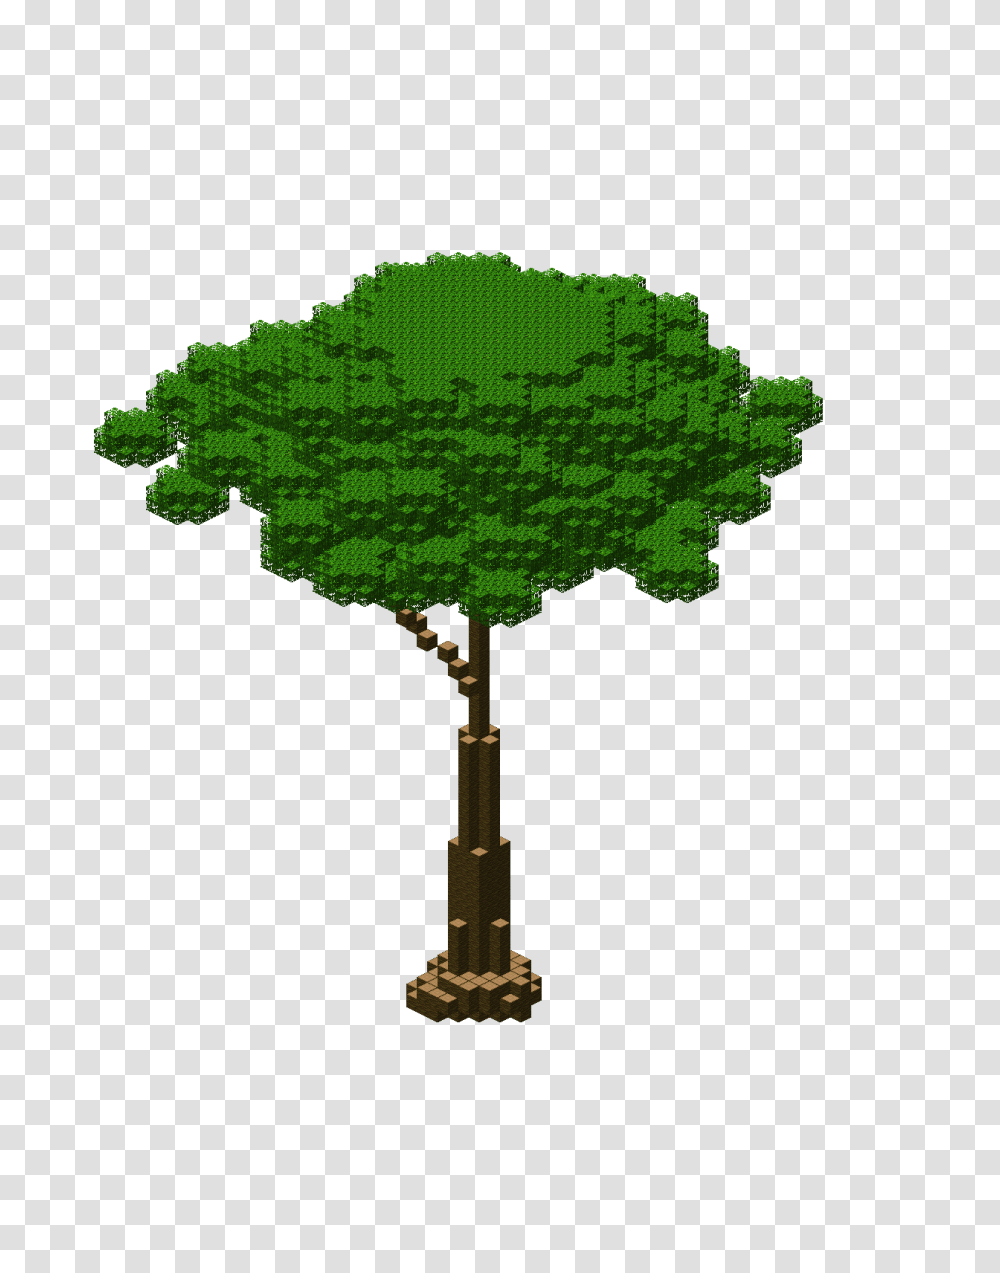 Image, Tree, Plant, Green, Vegetation Transparent Png